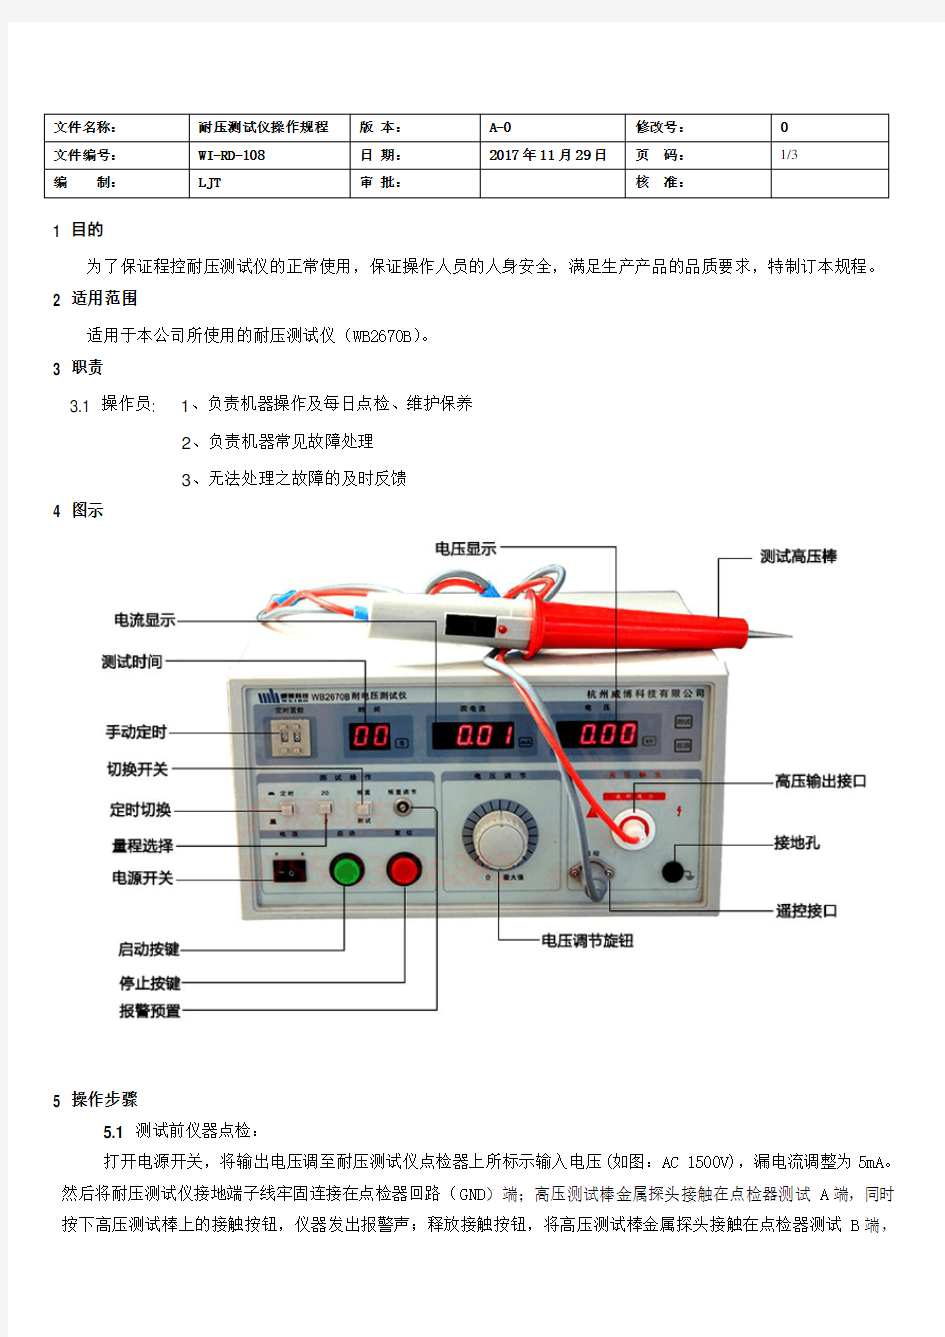 耐压测试仪(WB2670B)操作规程